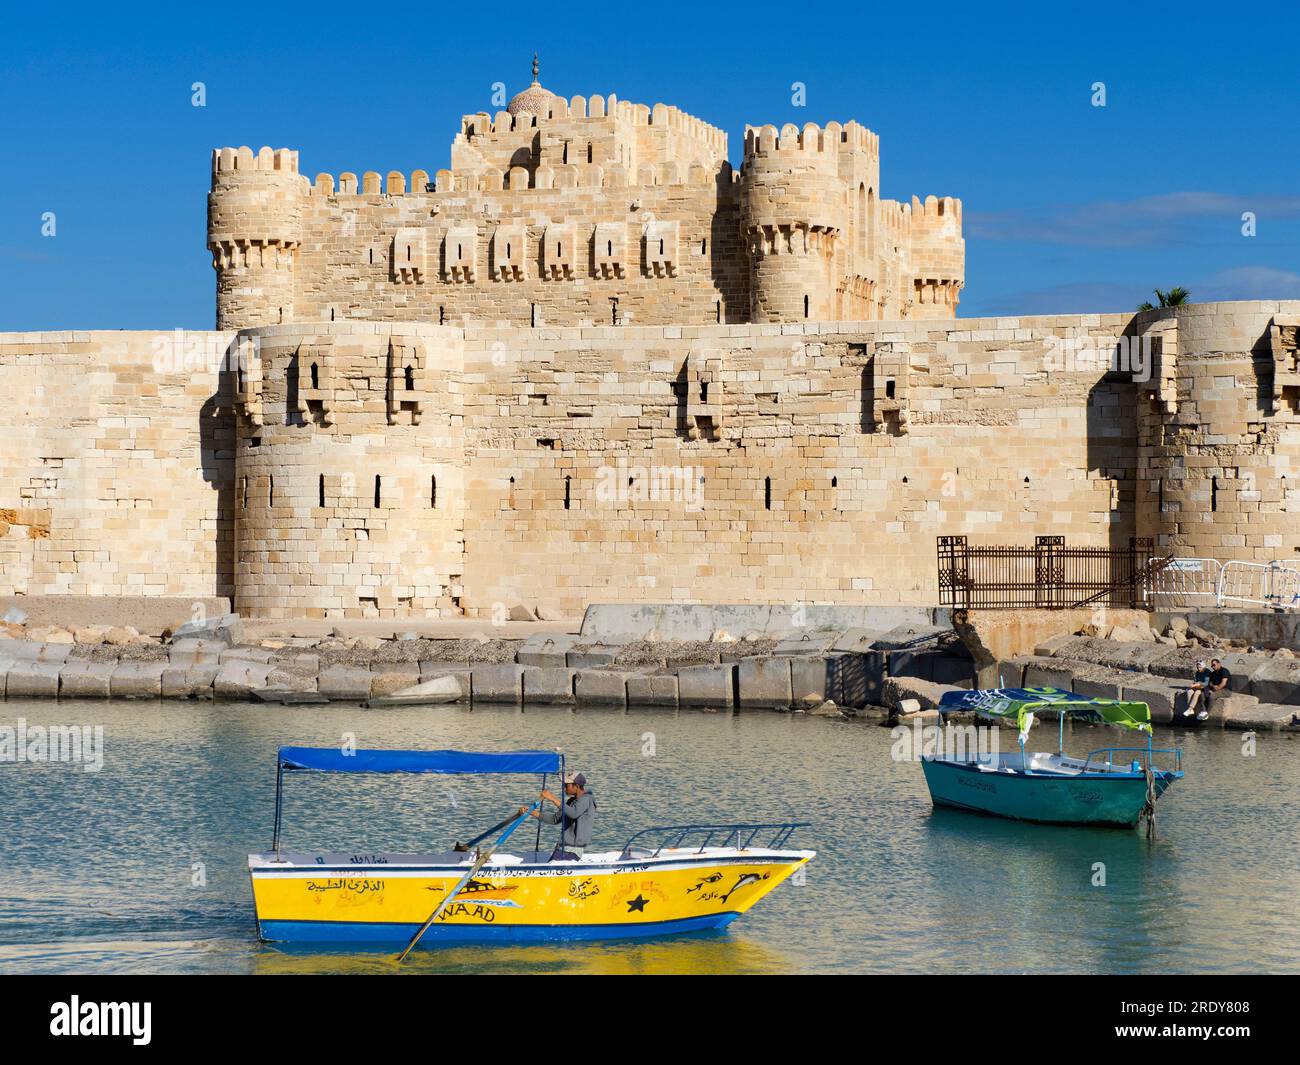 Die Zitadelle von Qaitbay befindet sich an der nördlichen Spitze der Insel Pharos an der Mündung des östlichen Hafens von Alexandria und ist eine Festung aus dem 15. Jahrhundert Stockfoto